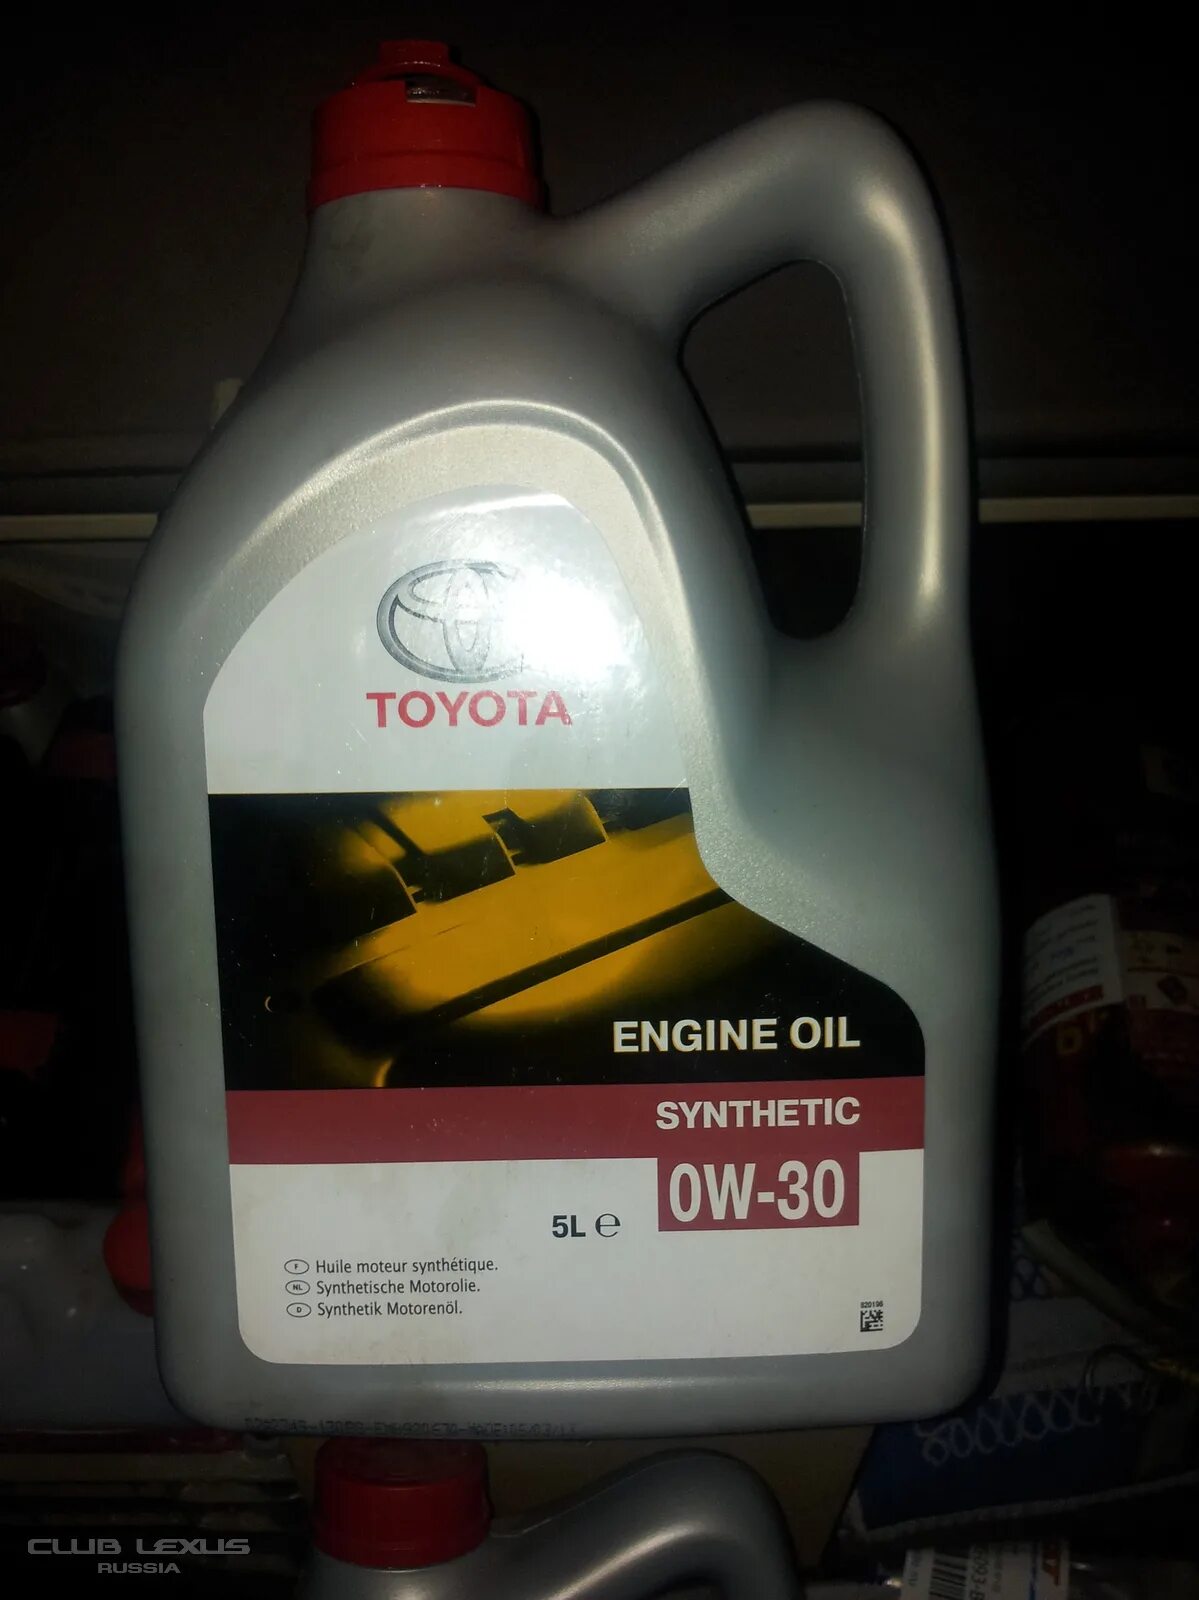 Как выглядит масло Оригинальное для Лексуса?. Как определить моторное масло 5w30 Toyota в пластике из ОАЭ.